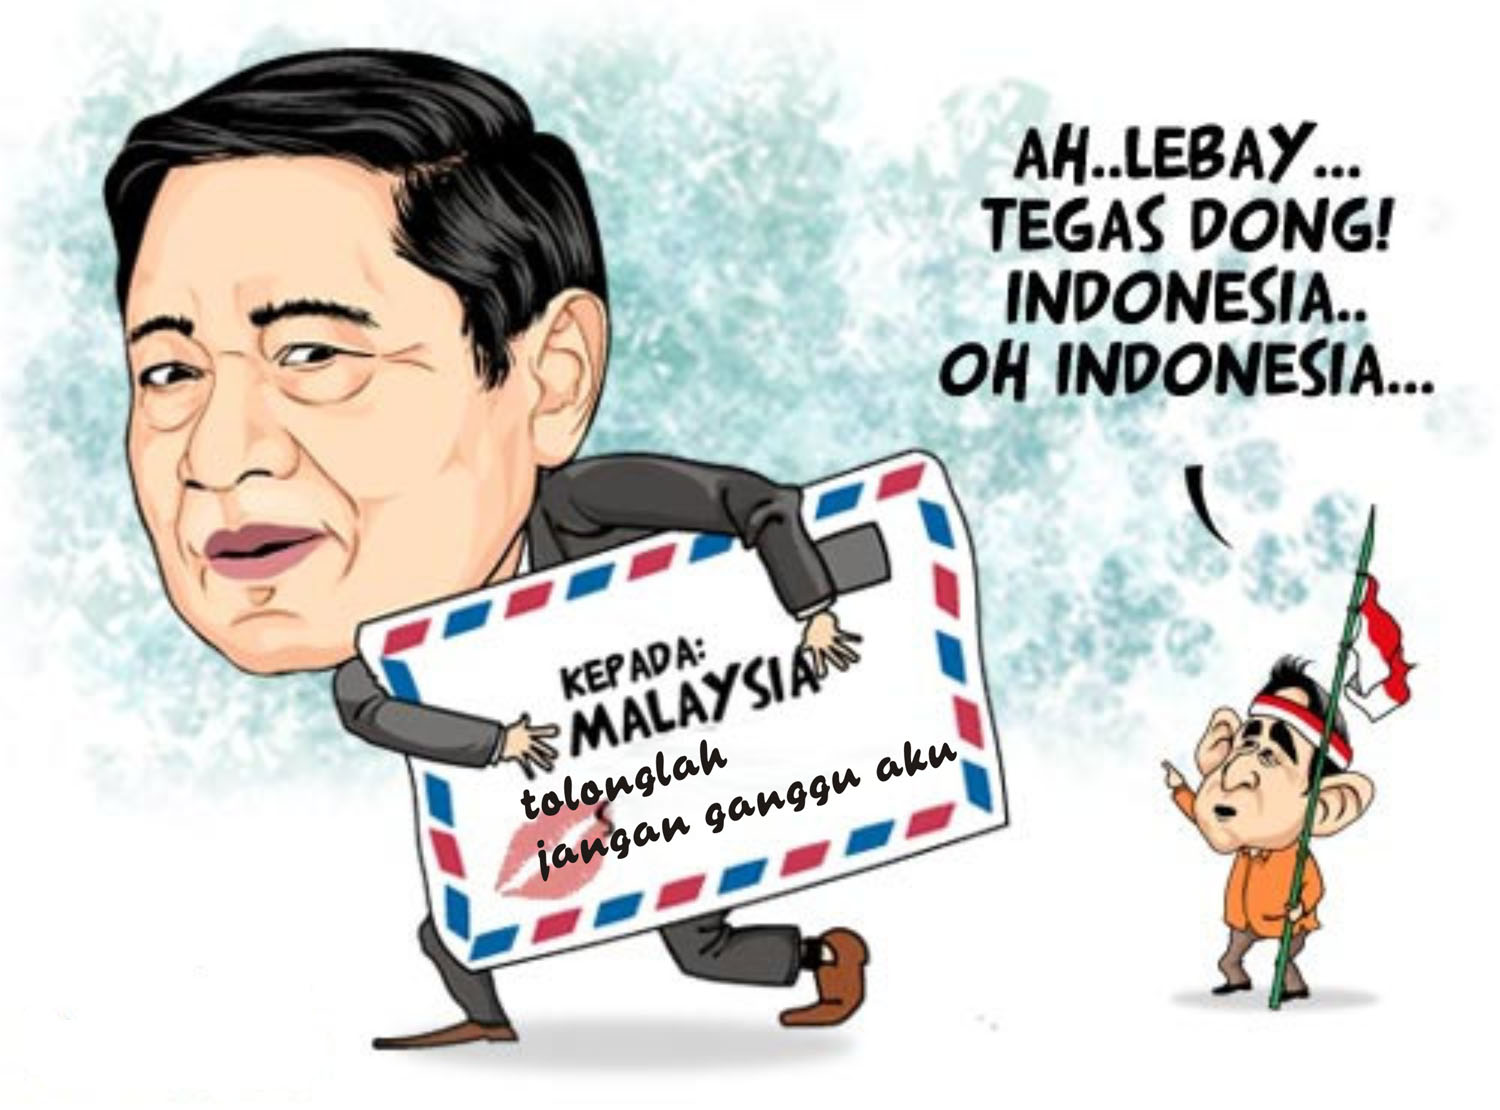 Gambar Ilustrasi Kartun Indonesia Hilustrasi